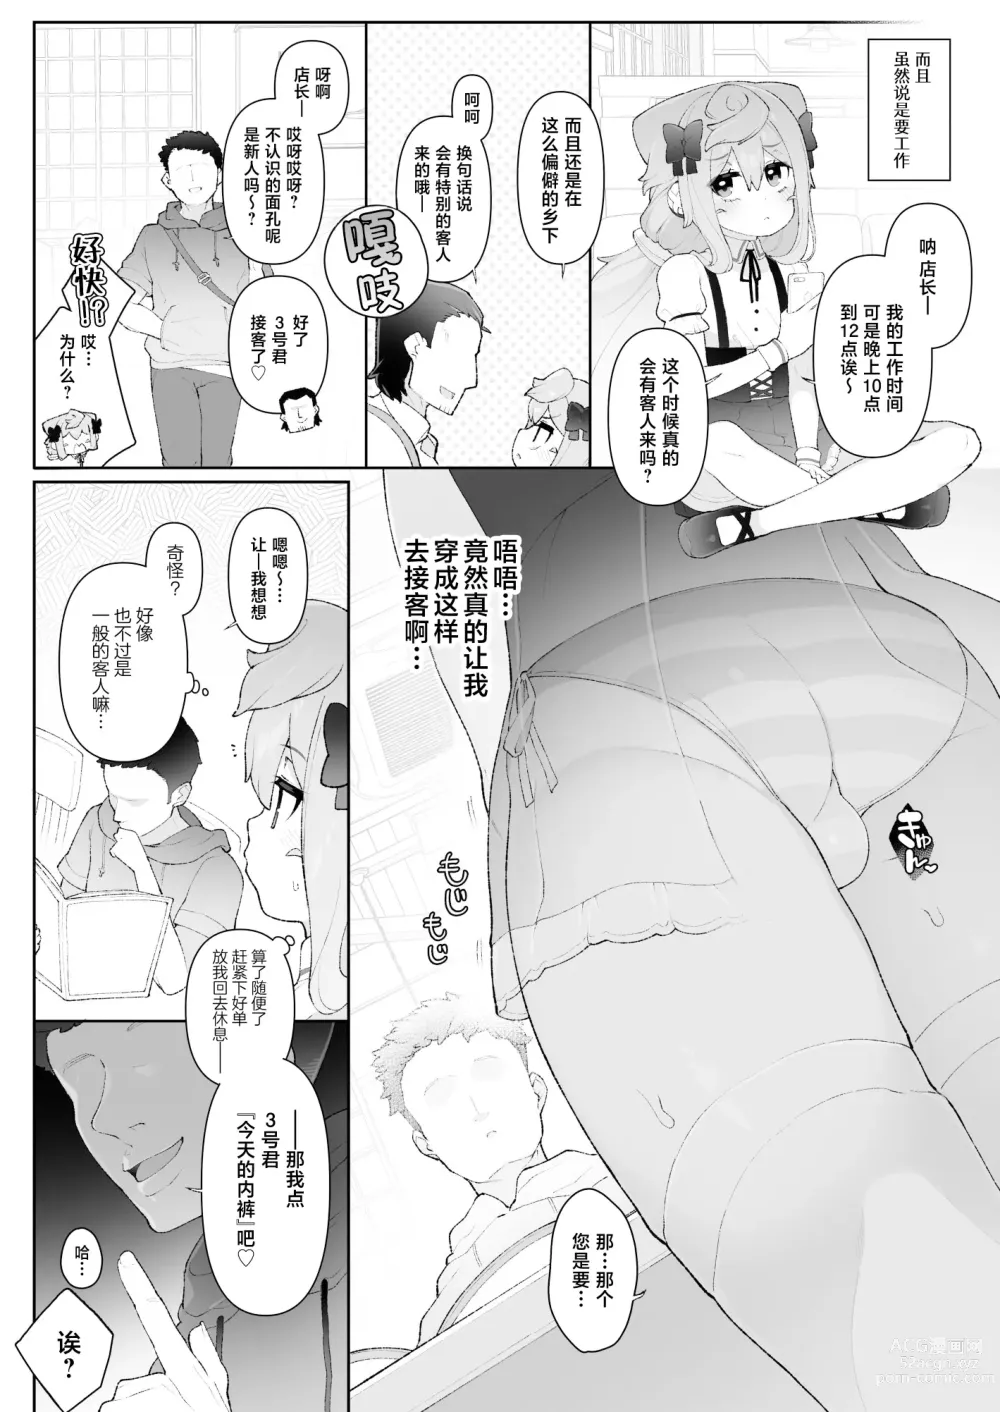 Page 4 of doujinshi HakaDol 3-gou-kun Tokusei Himitsu no Ura Menu!!